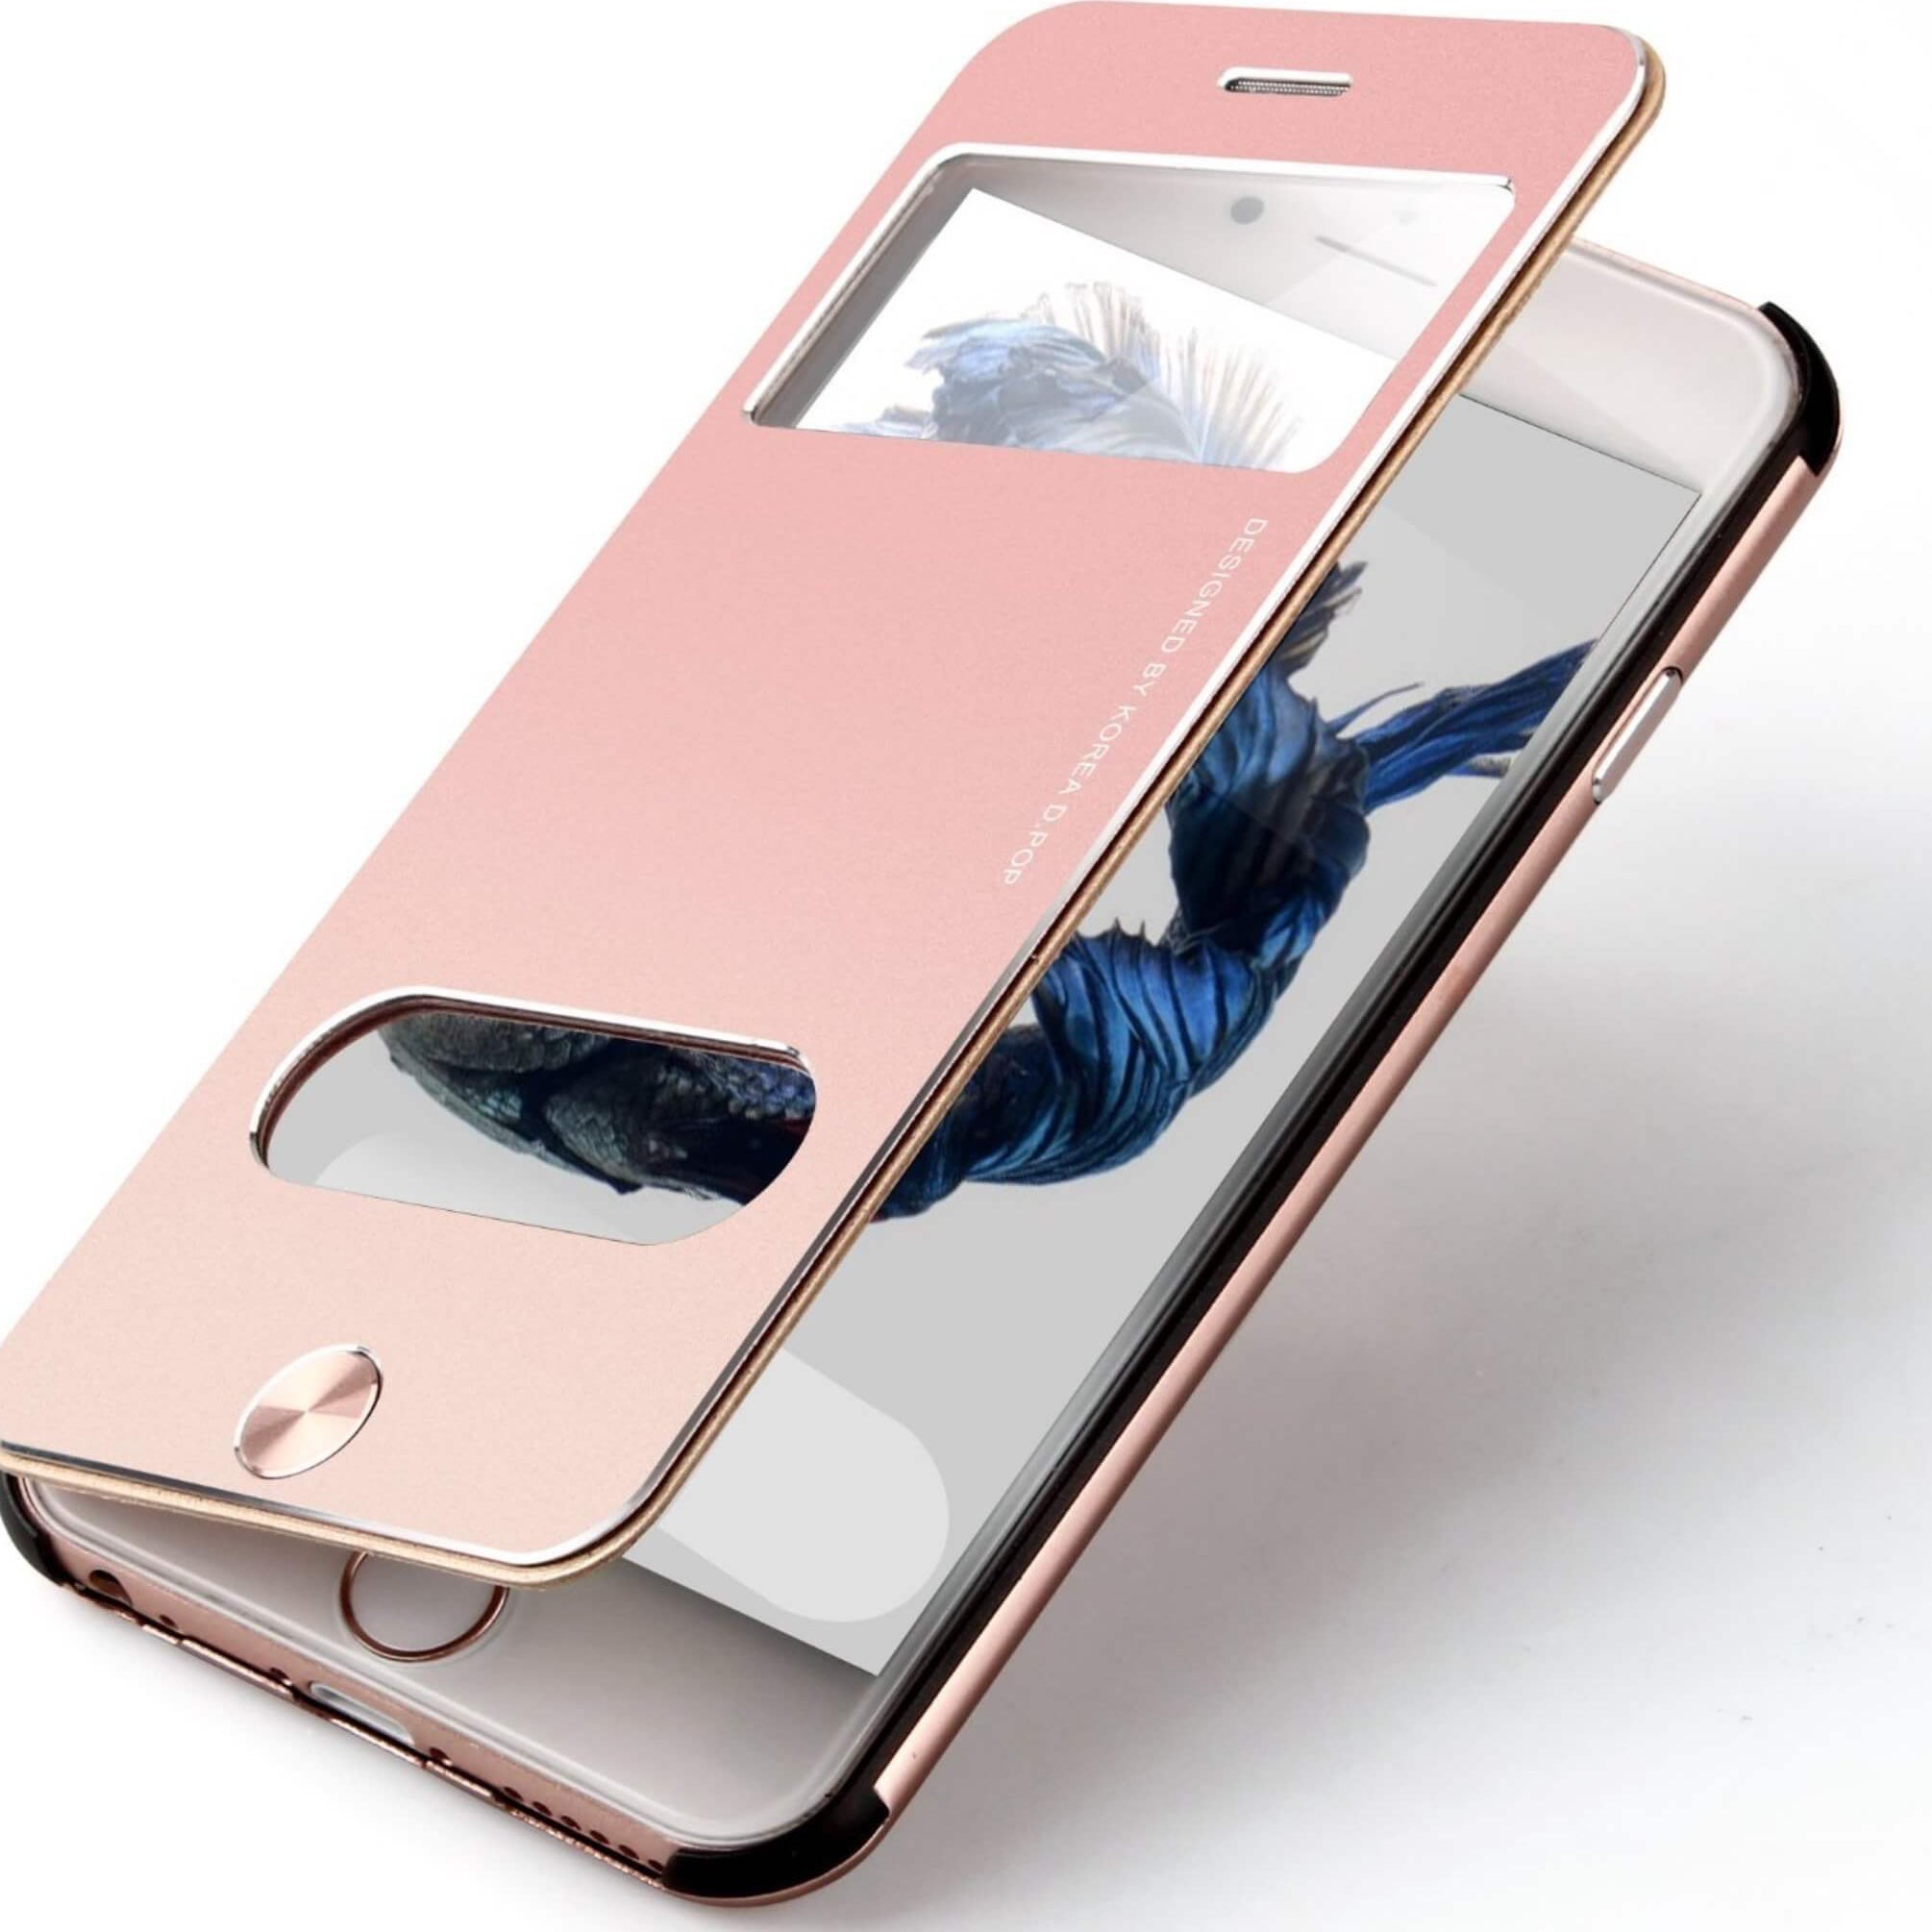 Handyhülle für iPhone aus Aluminium Rose / iPhone 5/5s